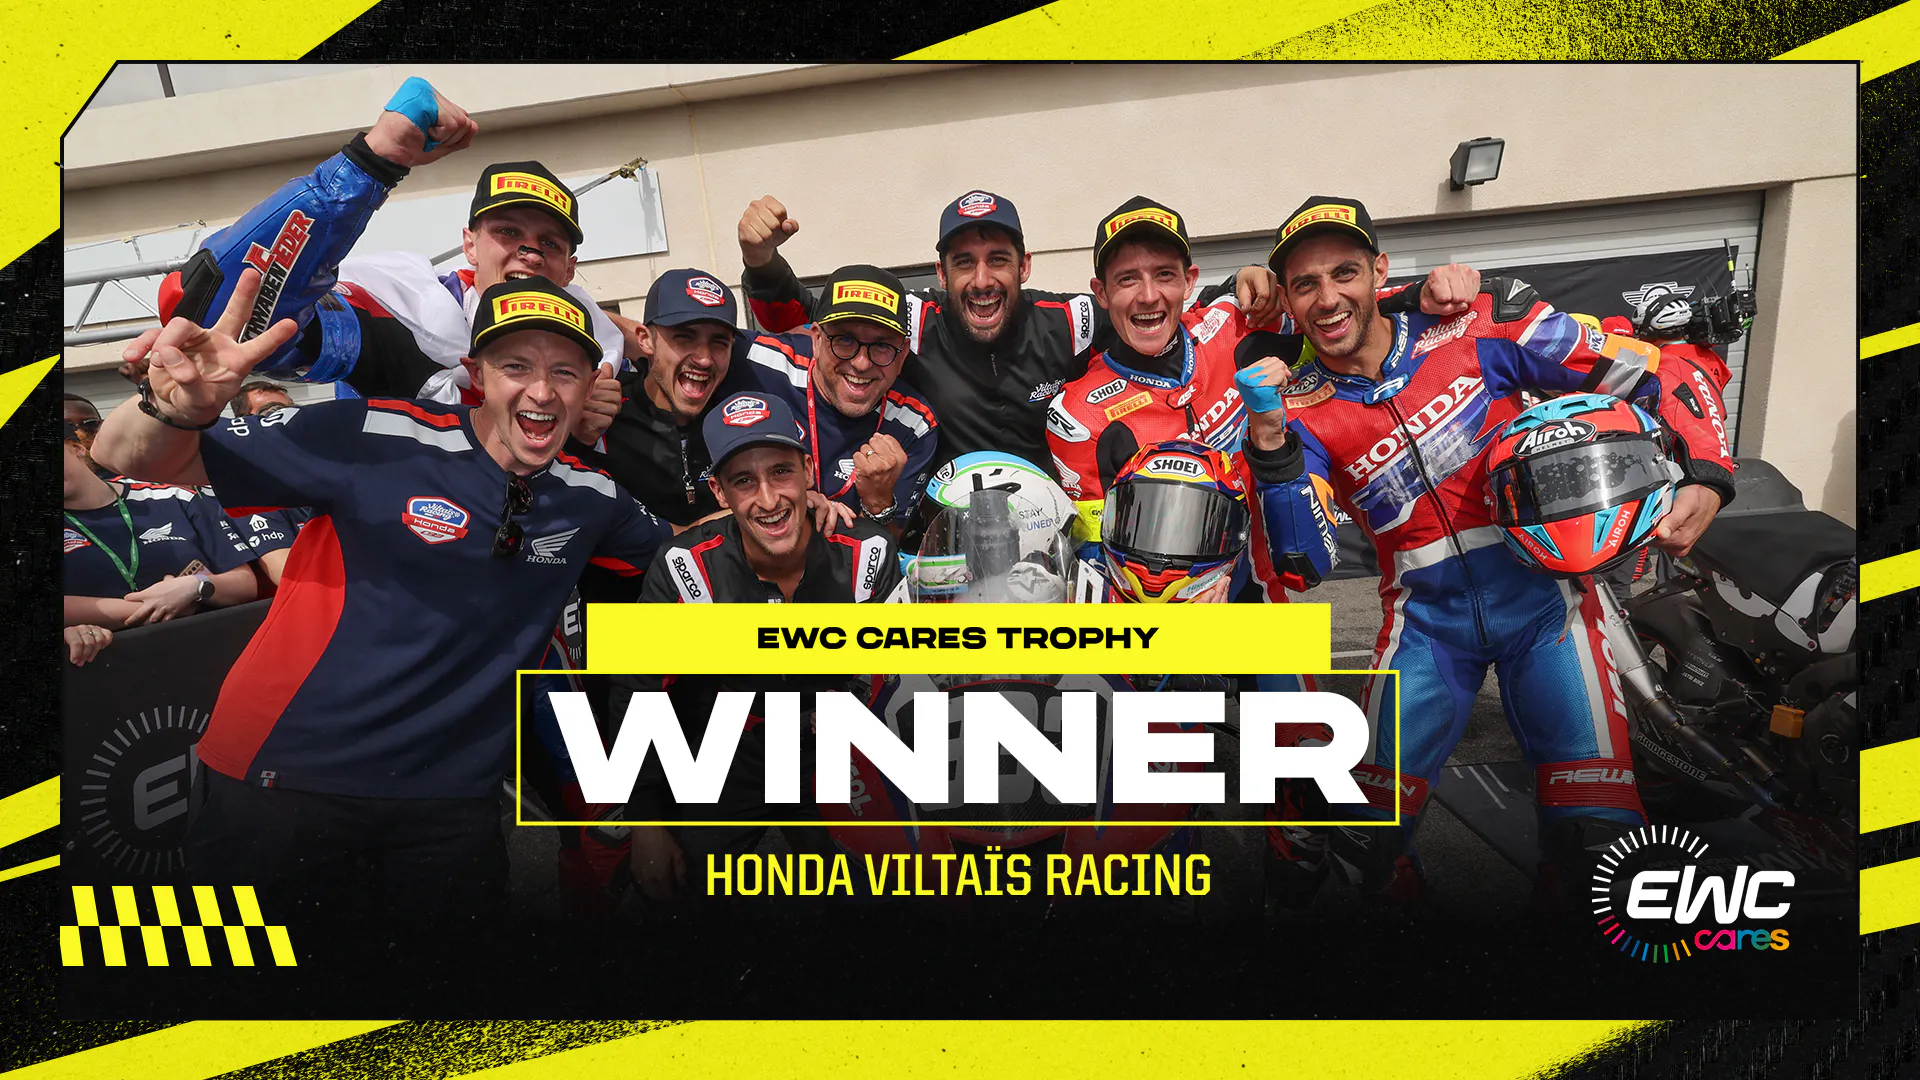 Honda Viltaïs Racing赢得首届FIM EWC Cares奖杯